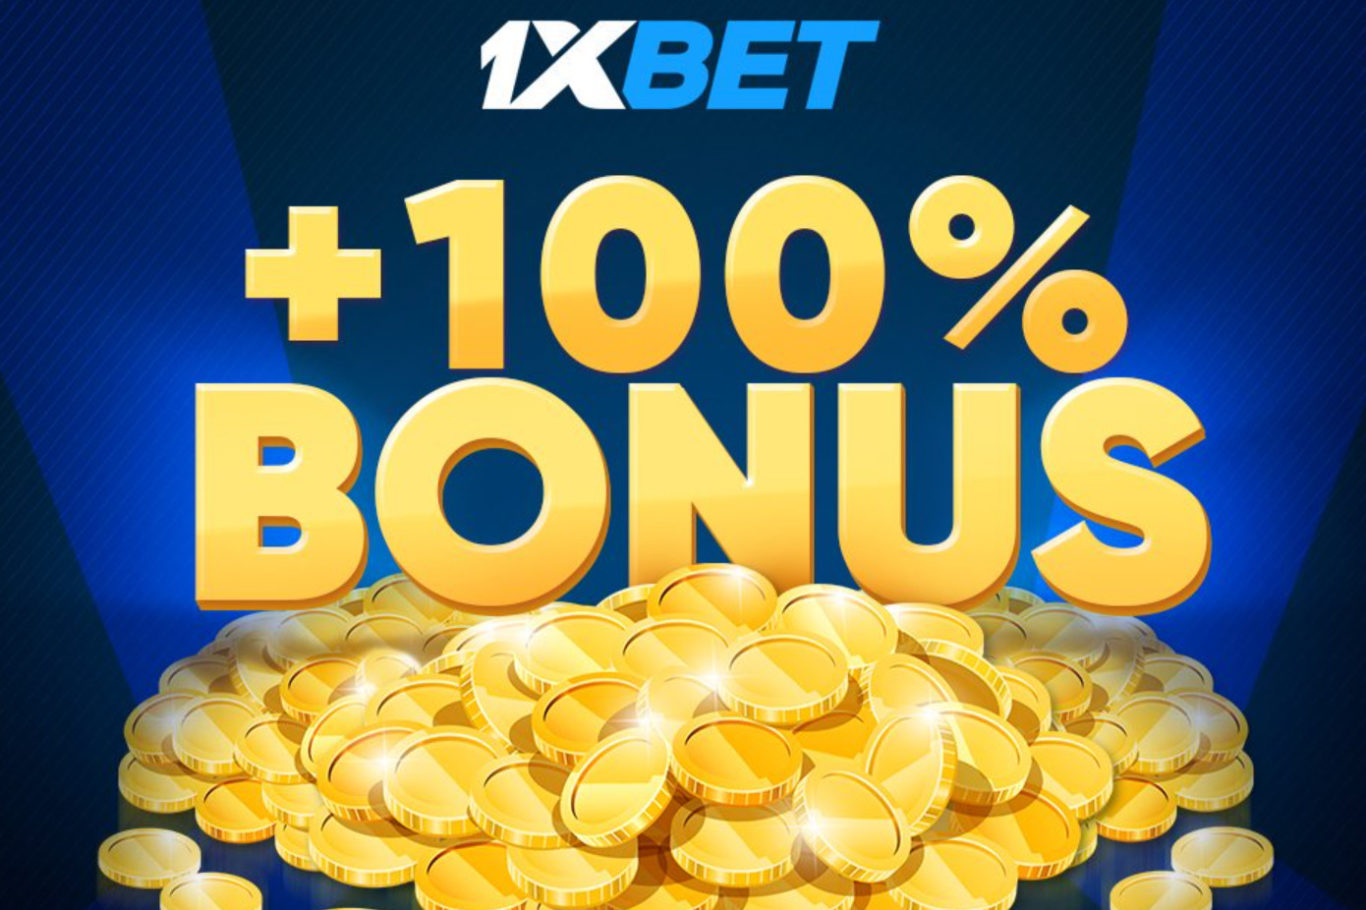 Bonuses For 1xBet Betting Platform Fans